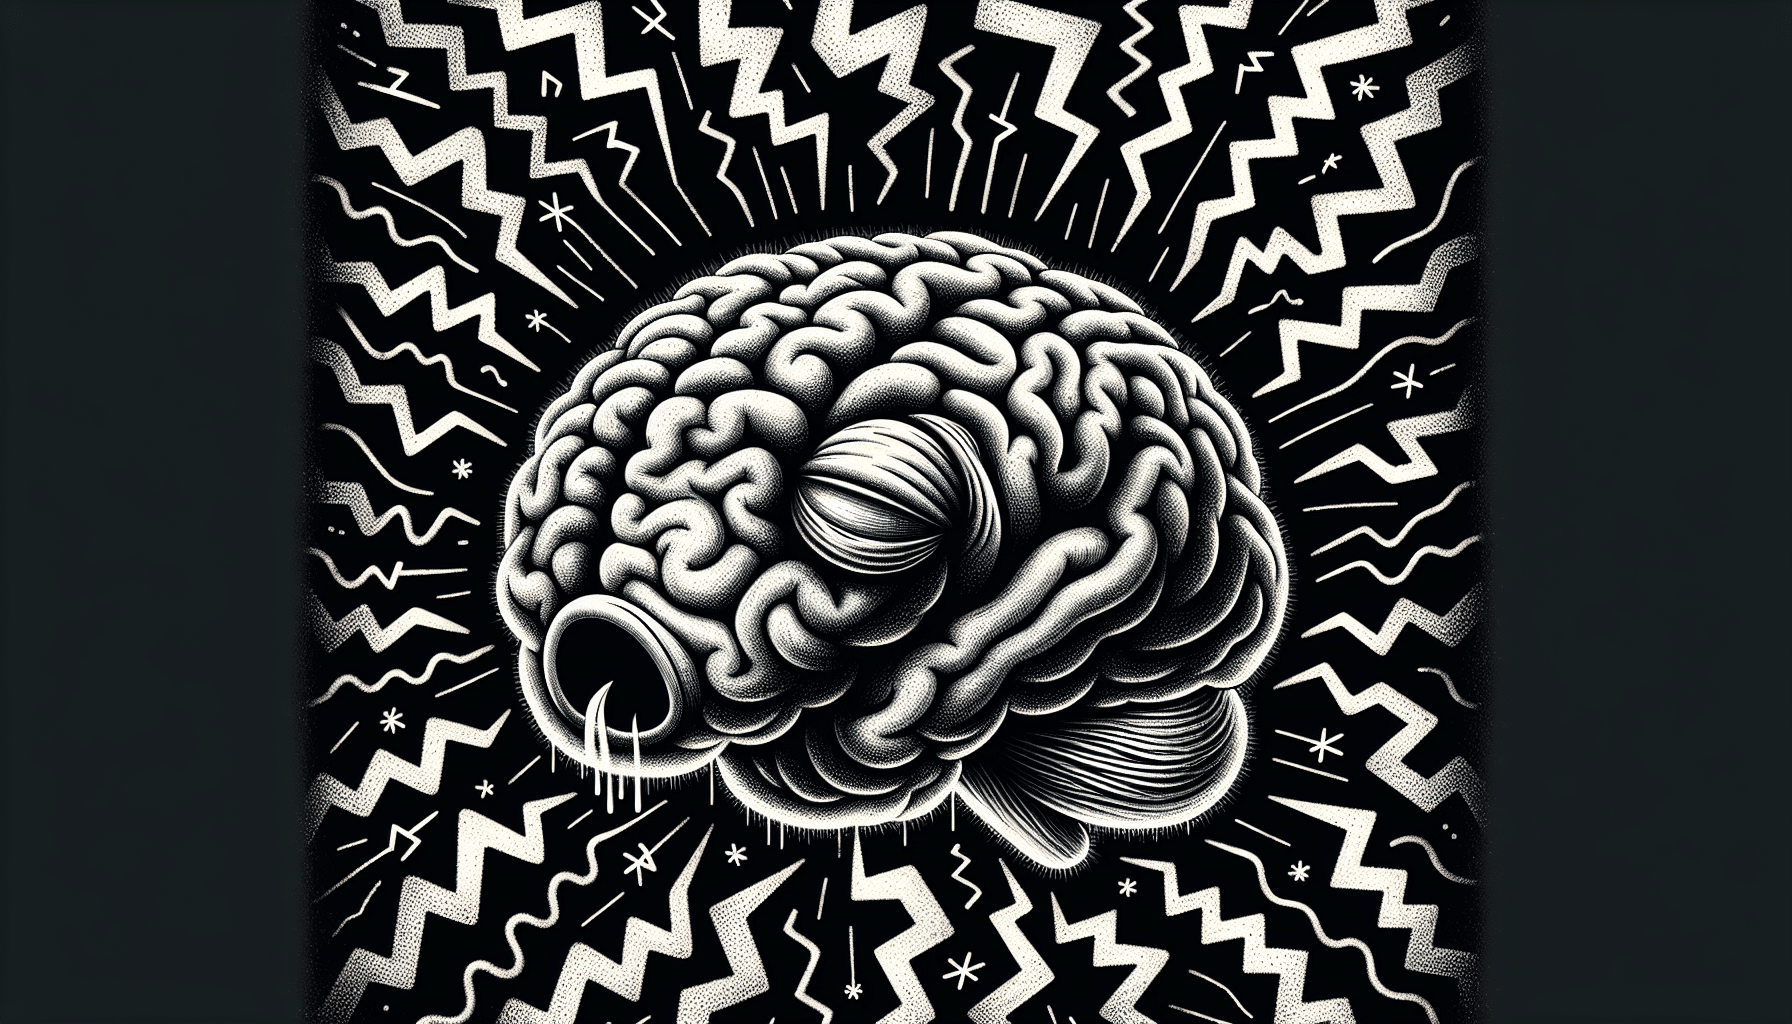 Eine Illustration eines schlafenden Gehirns mit einer gestörten Schlaf-Wach-Regulation.